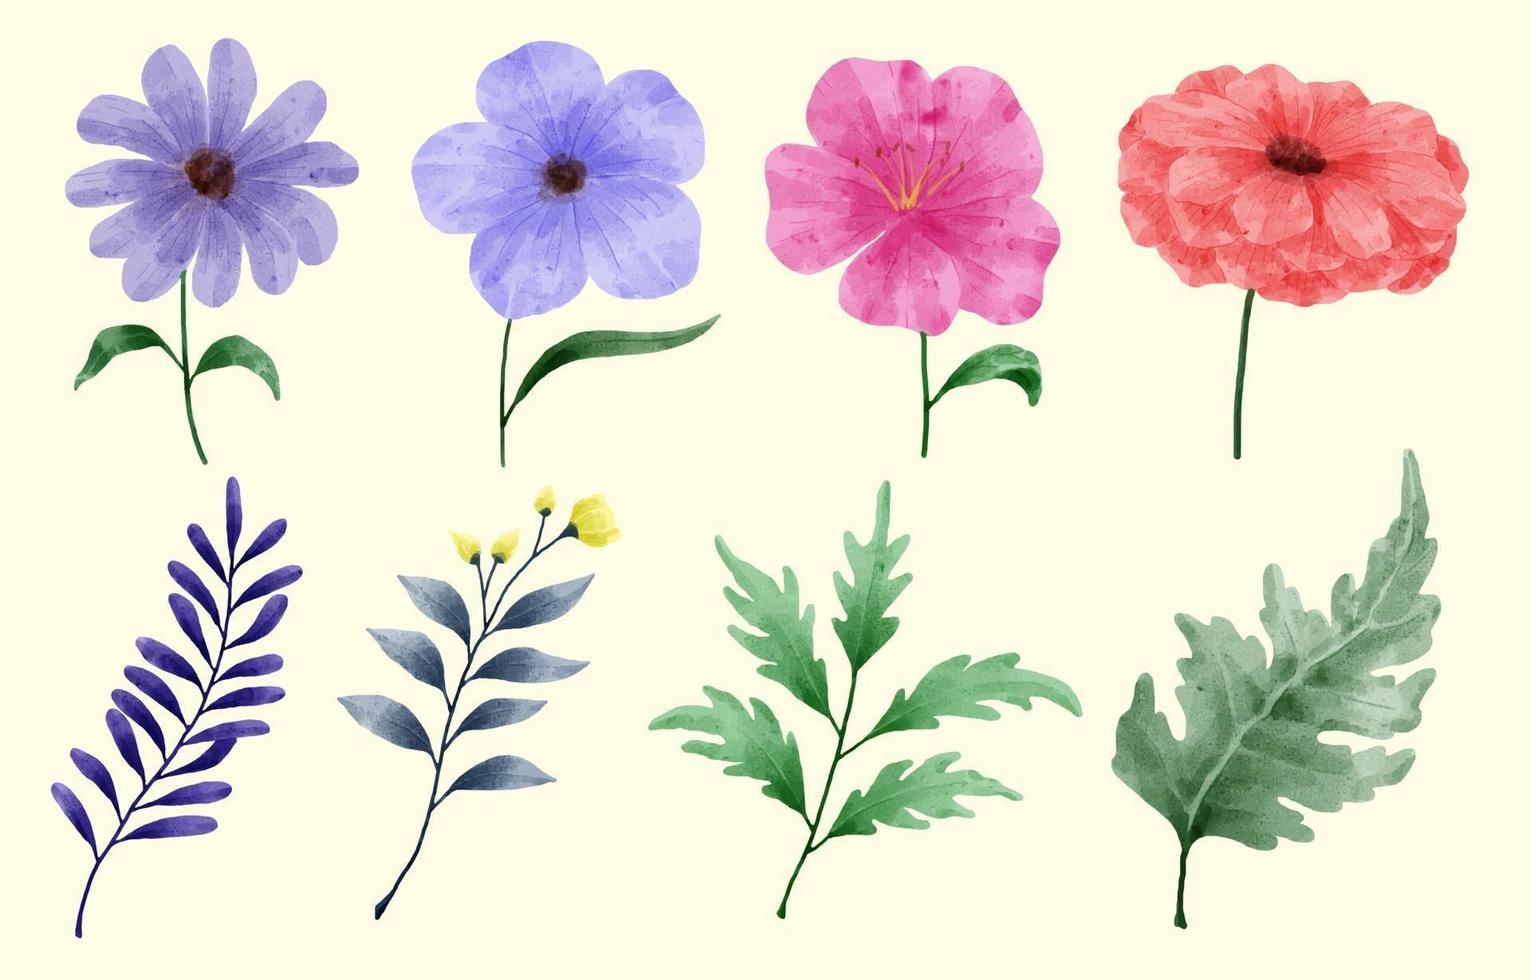 un conjunto de flores pintadas en acuarela para varias tarjetas y tarjetas de felicitación. vector